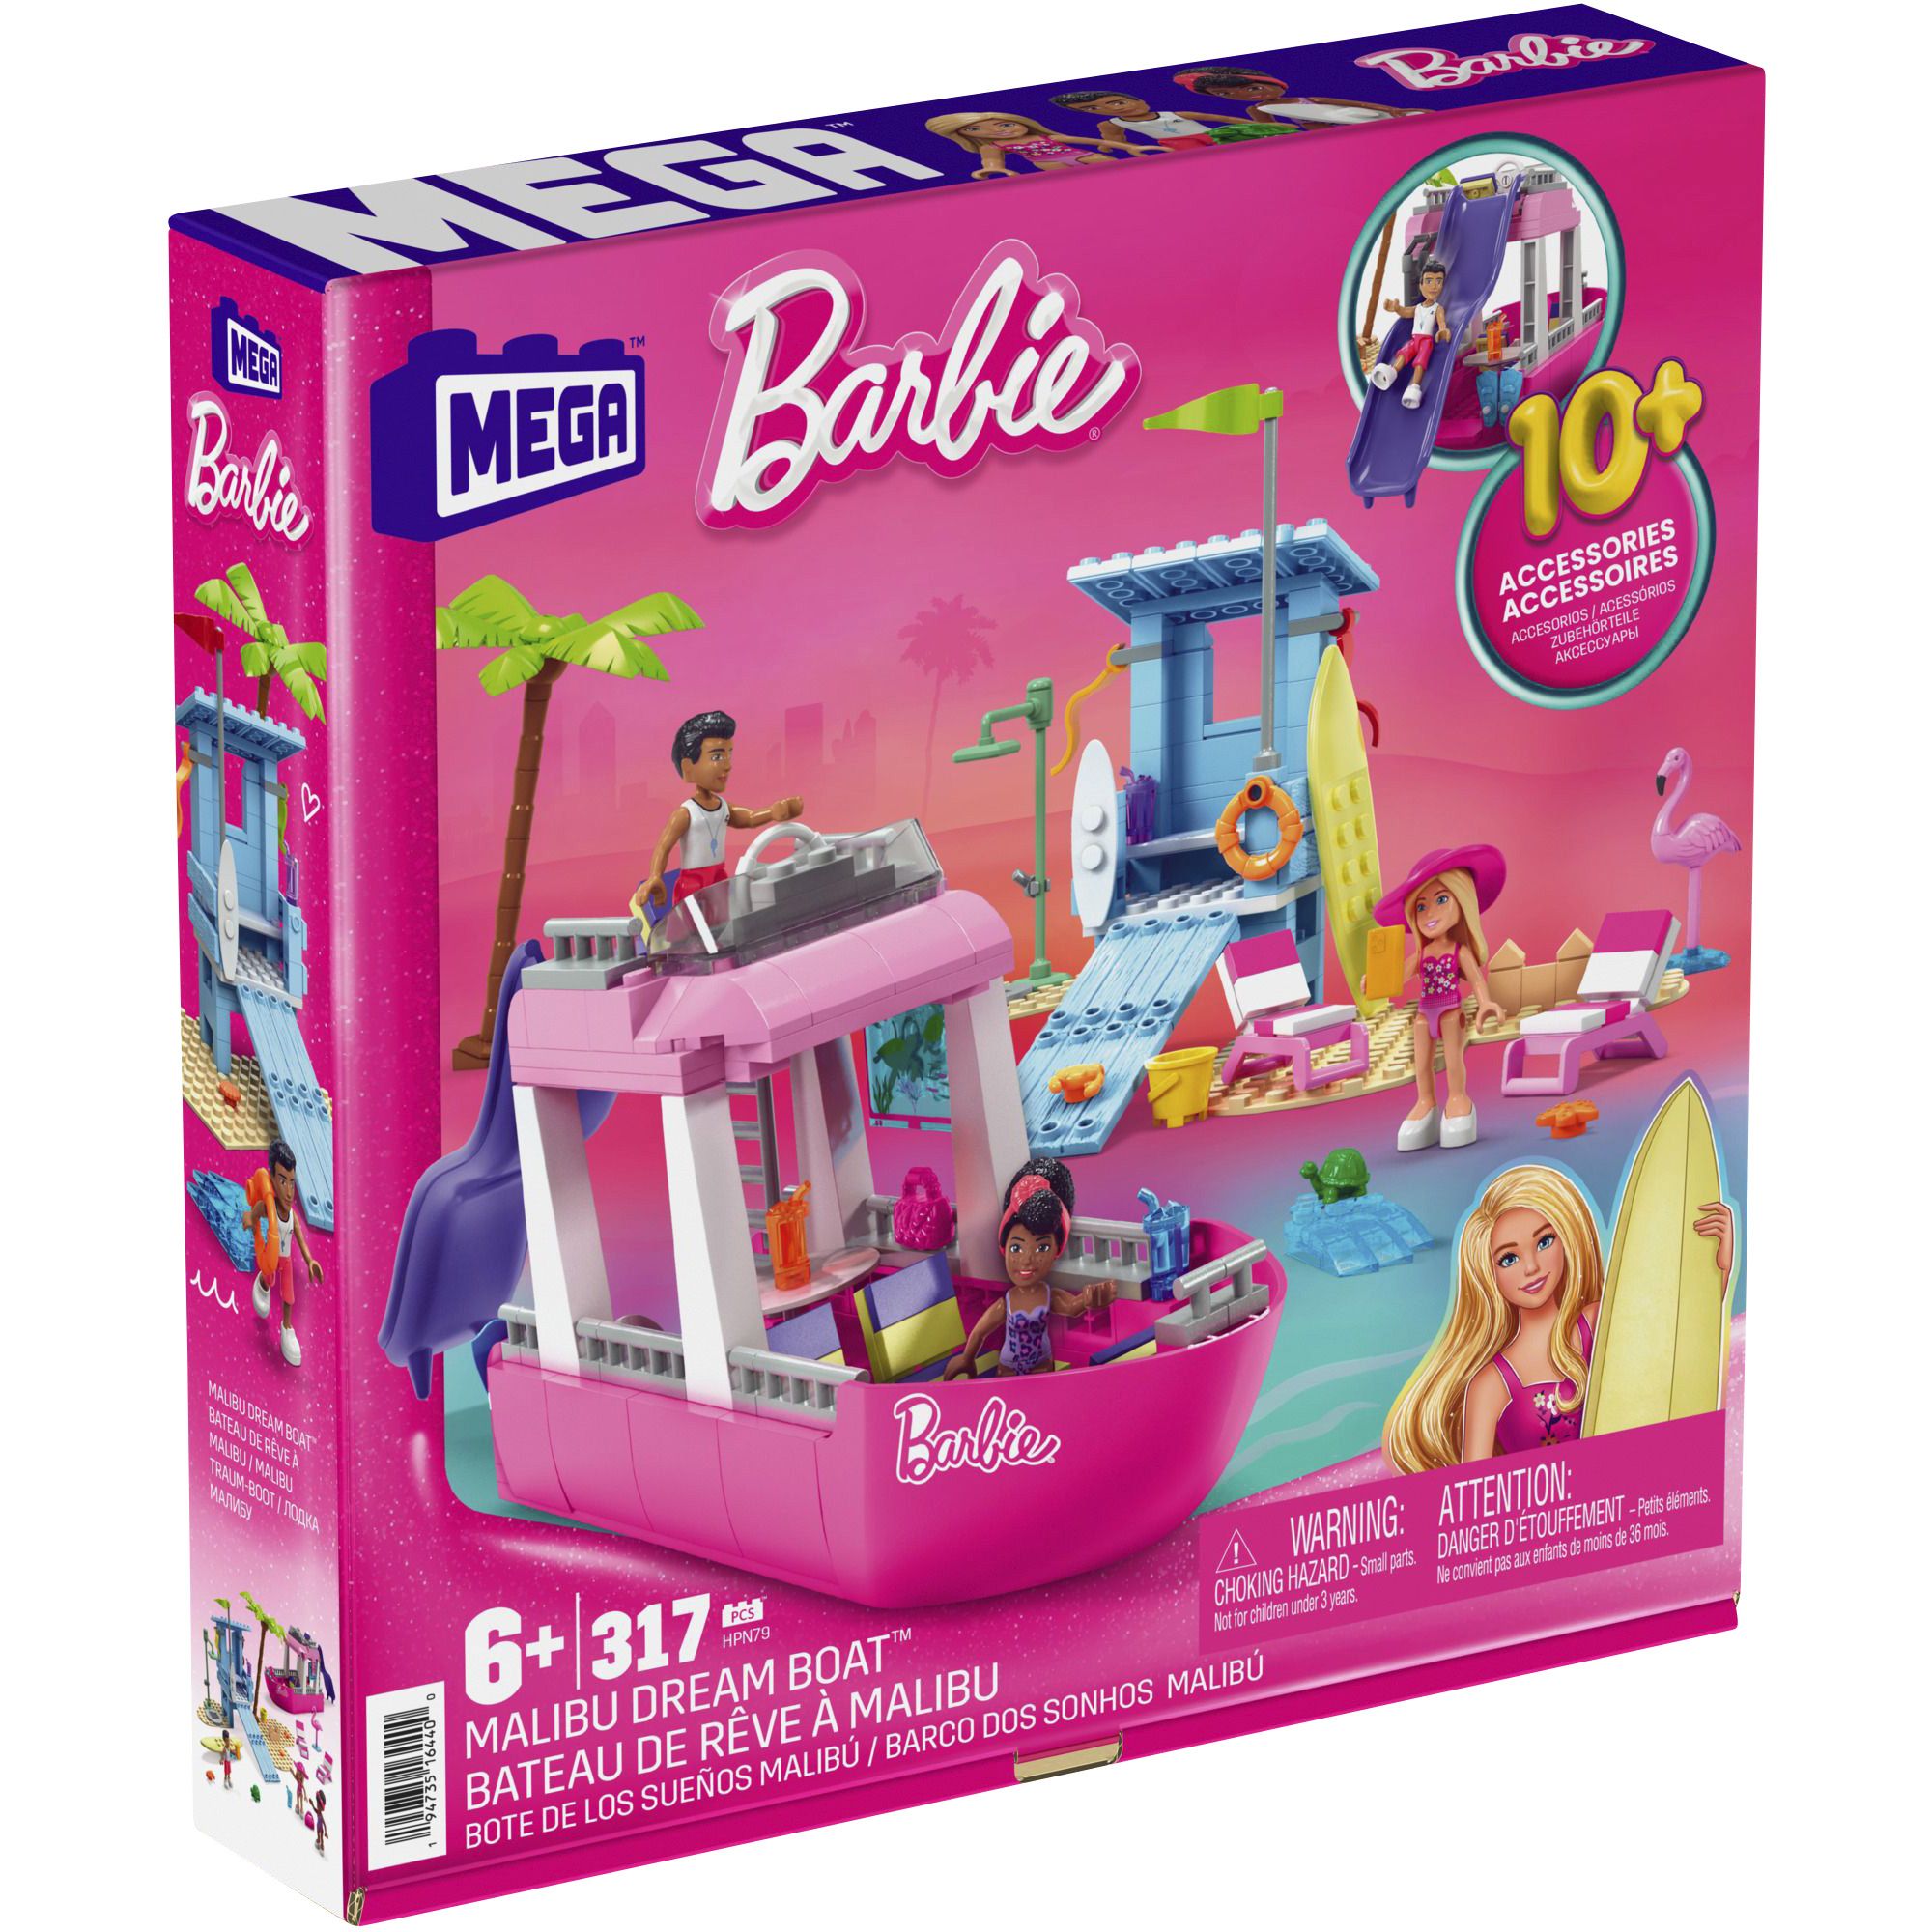 alarm Omsorg spejder Fingerhut - Mega Bloks MEGA Barbie Malibu Dream Boat 317-Pc. Building Set